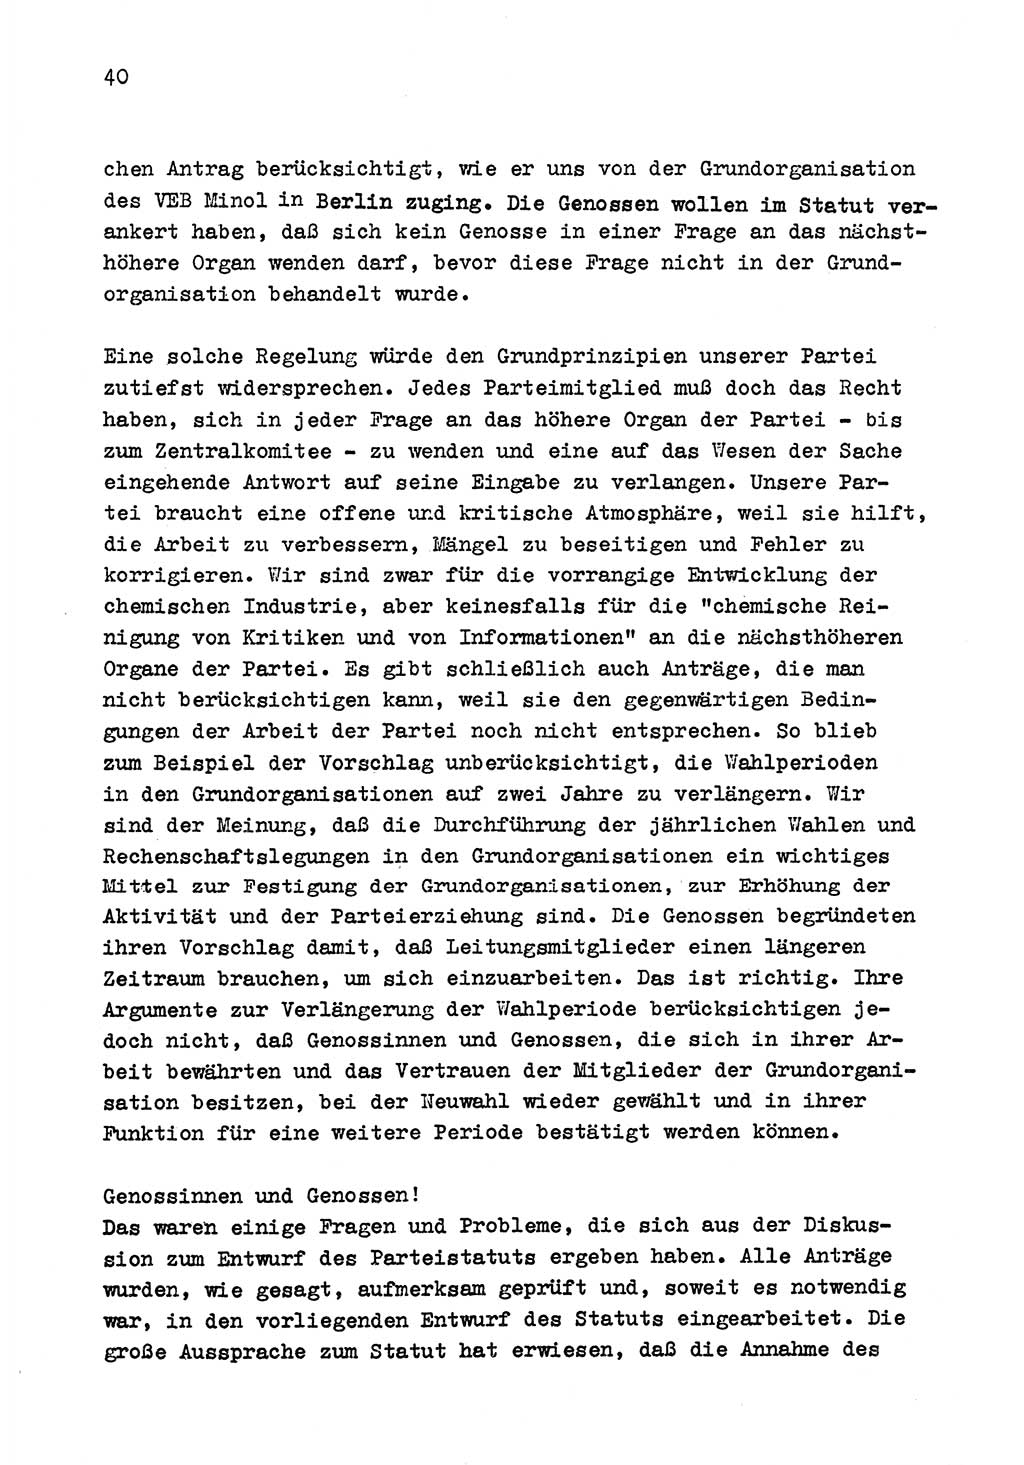 Zu Fragen der Parteiarbeit [Sozialistische Einheitspartei Deutschlands (SED) Deutsche Demokratische Republik (DDR)] 1979, Seite 40 (Fr. PA SED DDR 1979, S. 40)